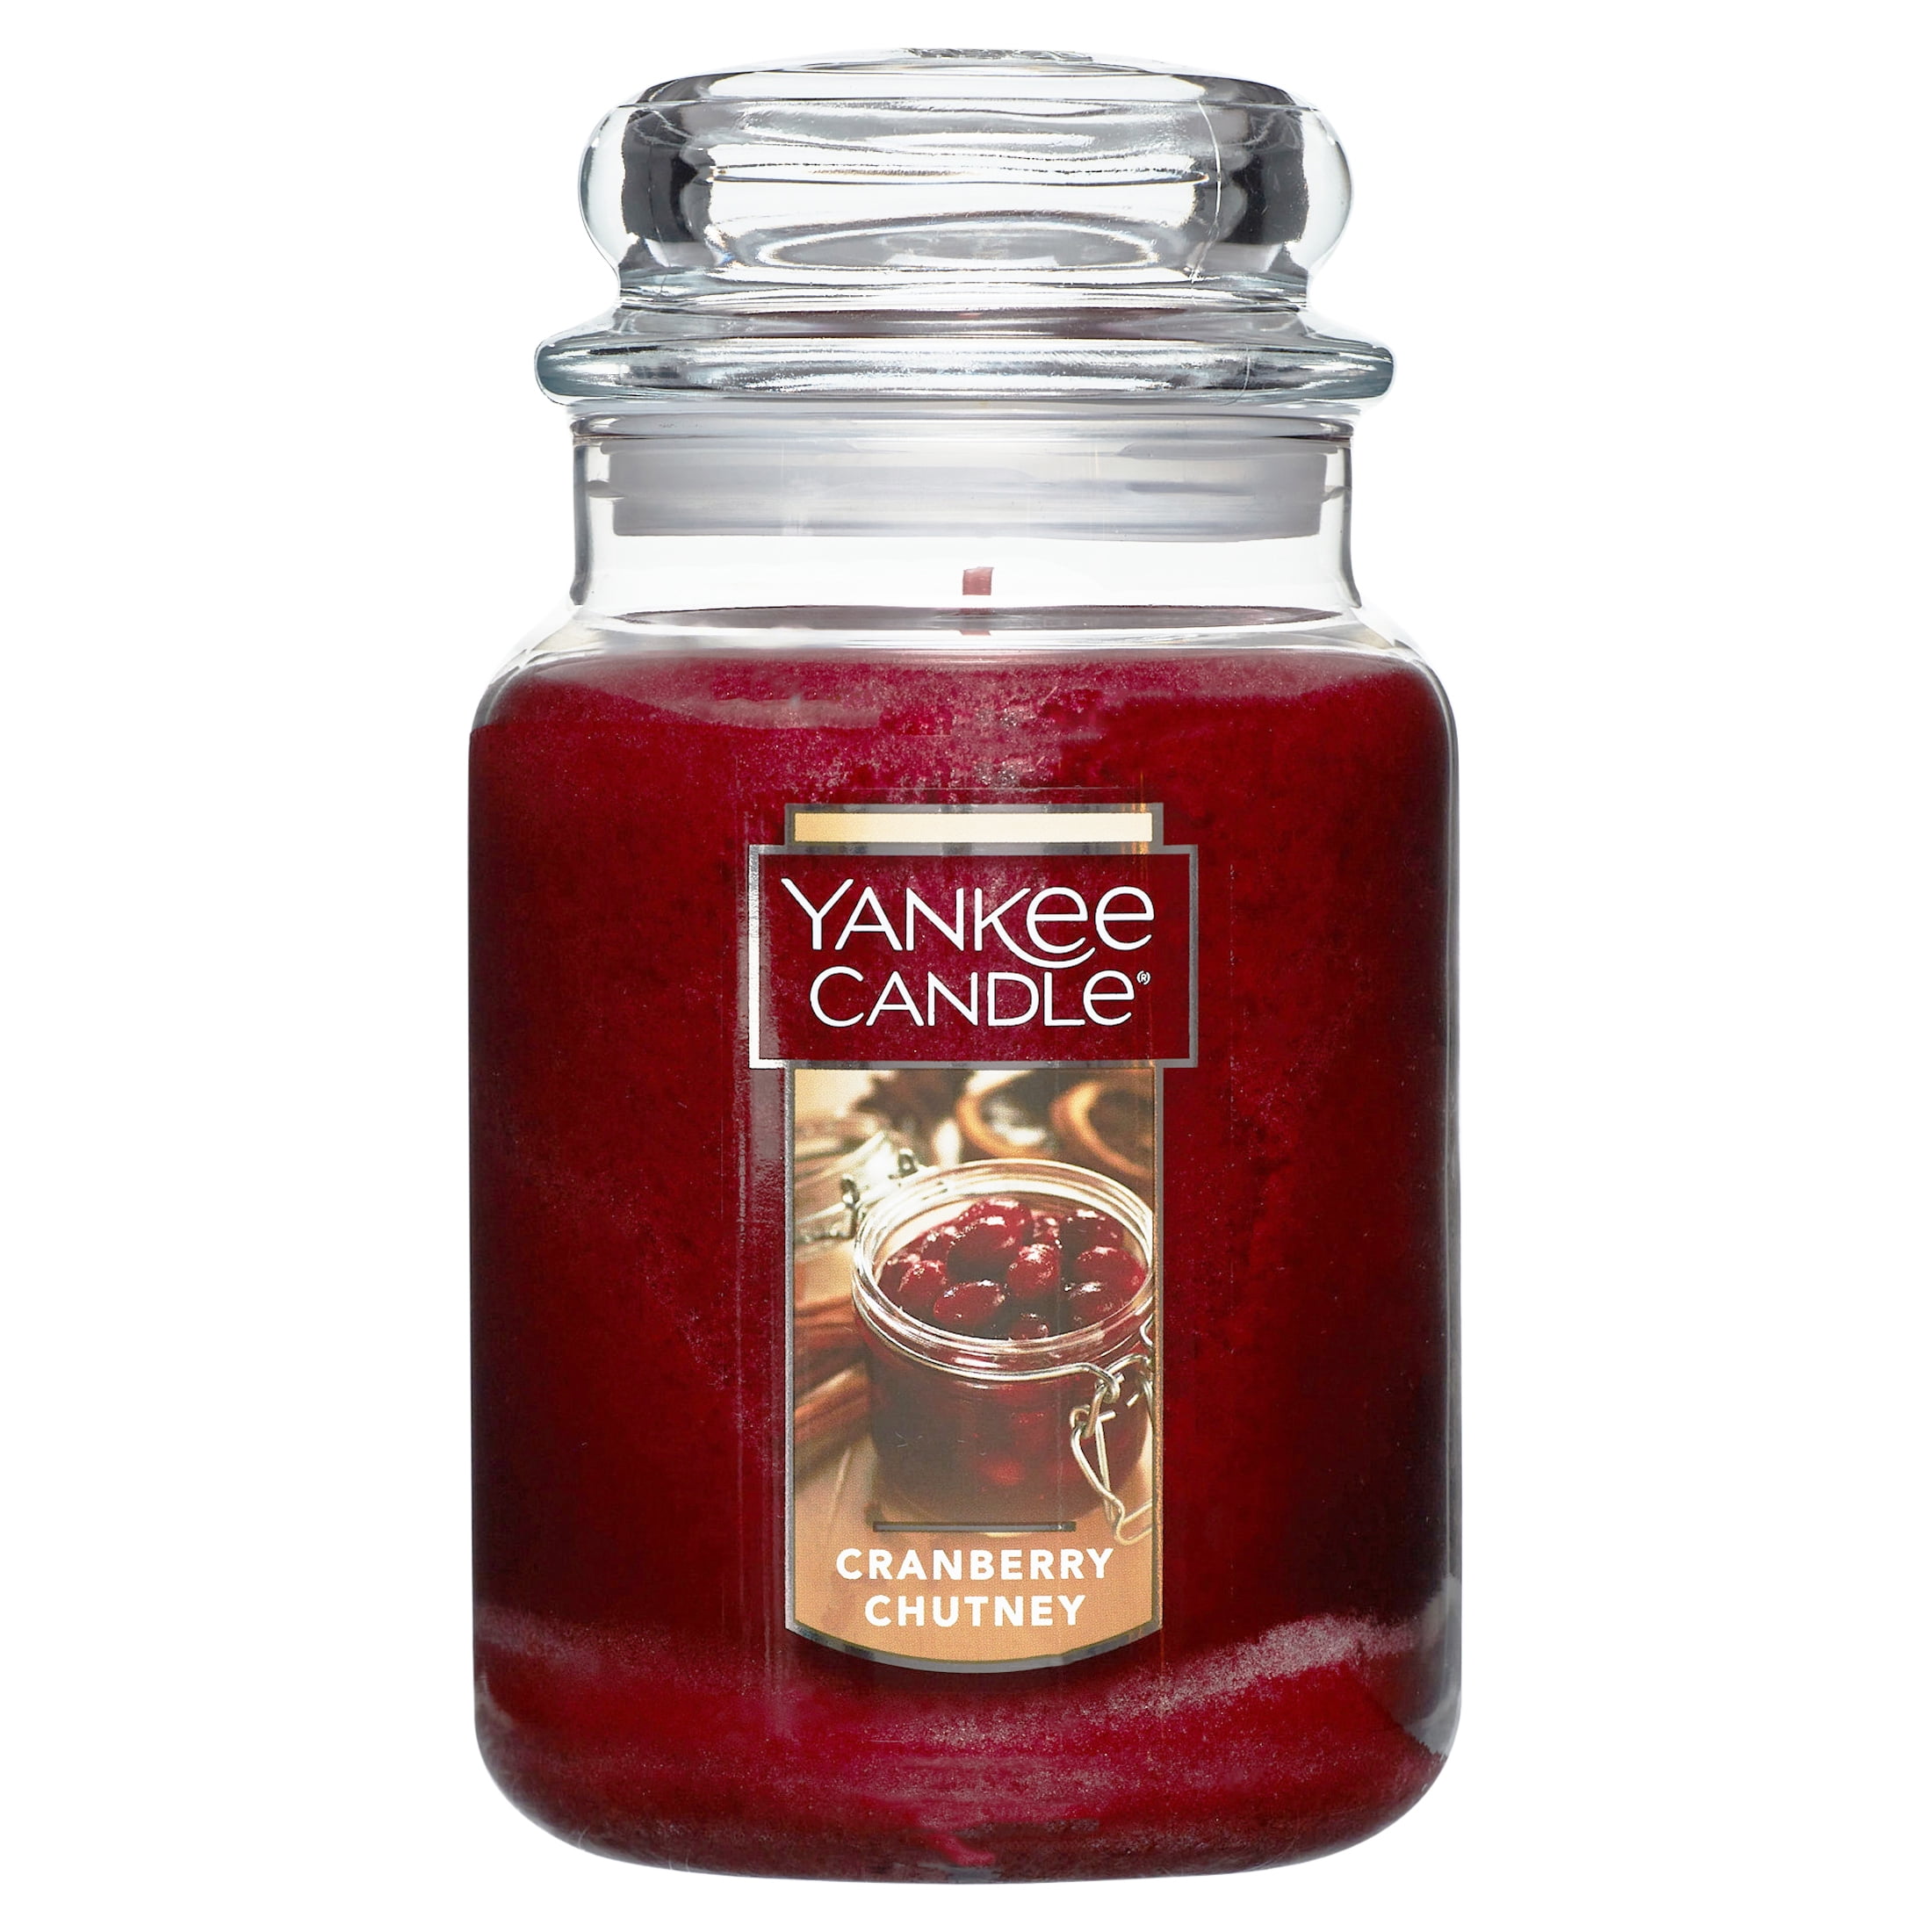 Yankee Candle Large Cranberry Chutney Jar Candle - 22 oz